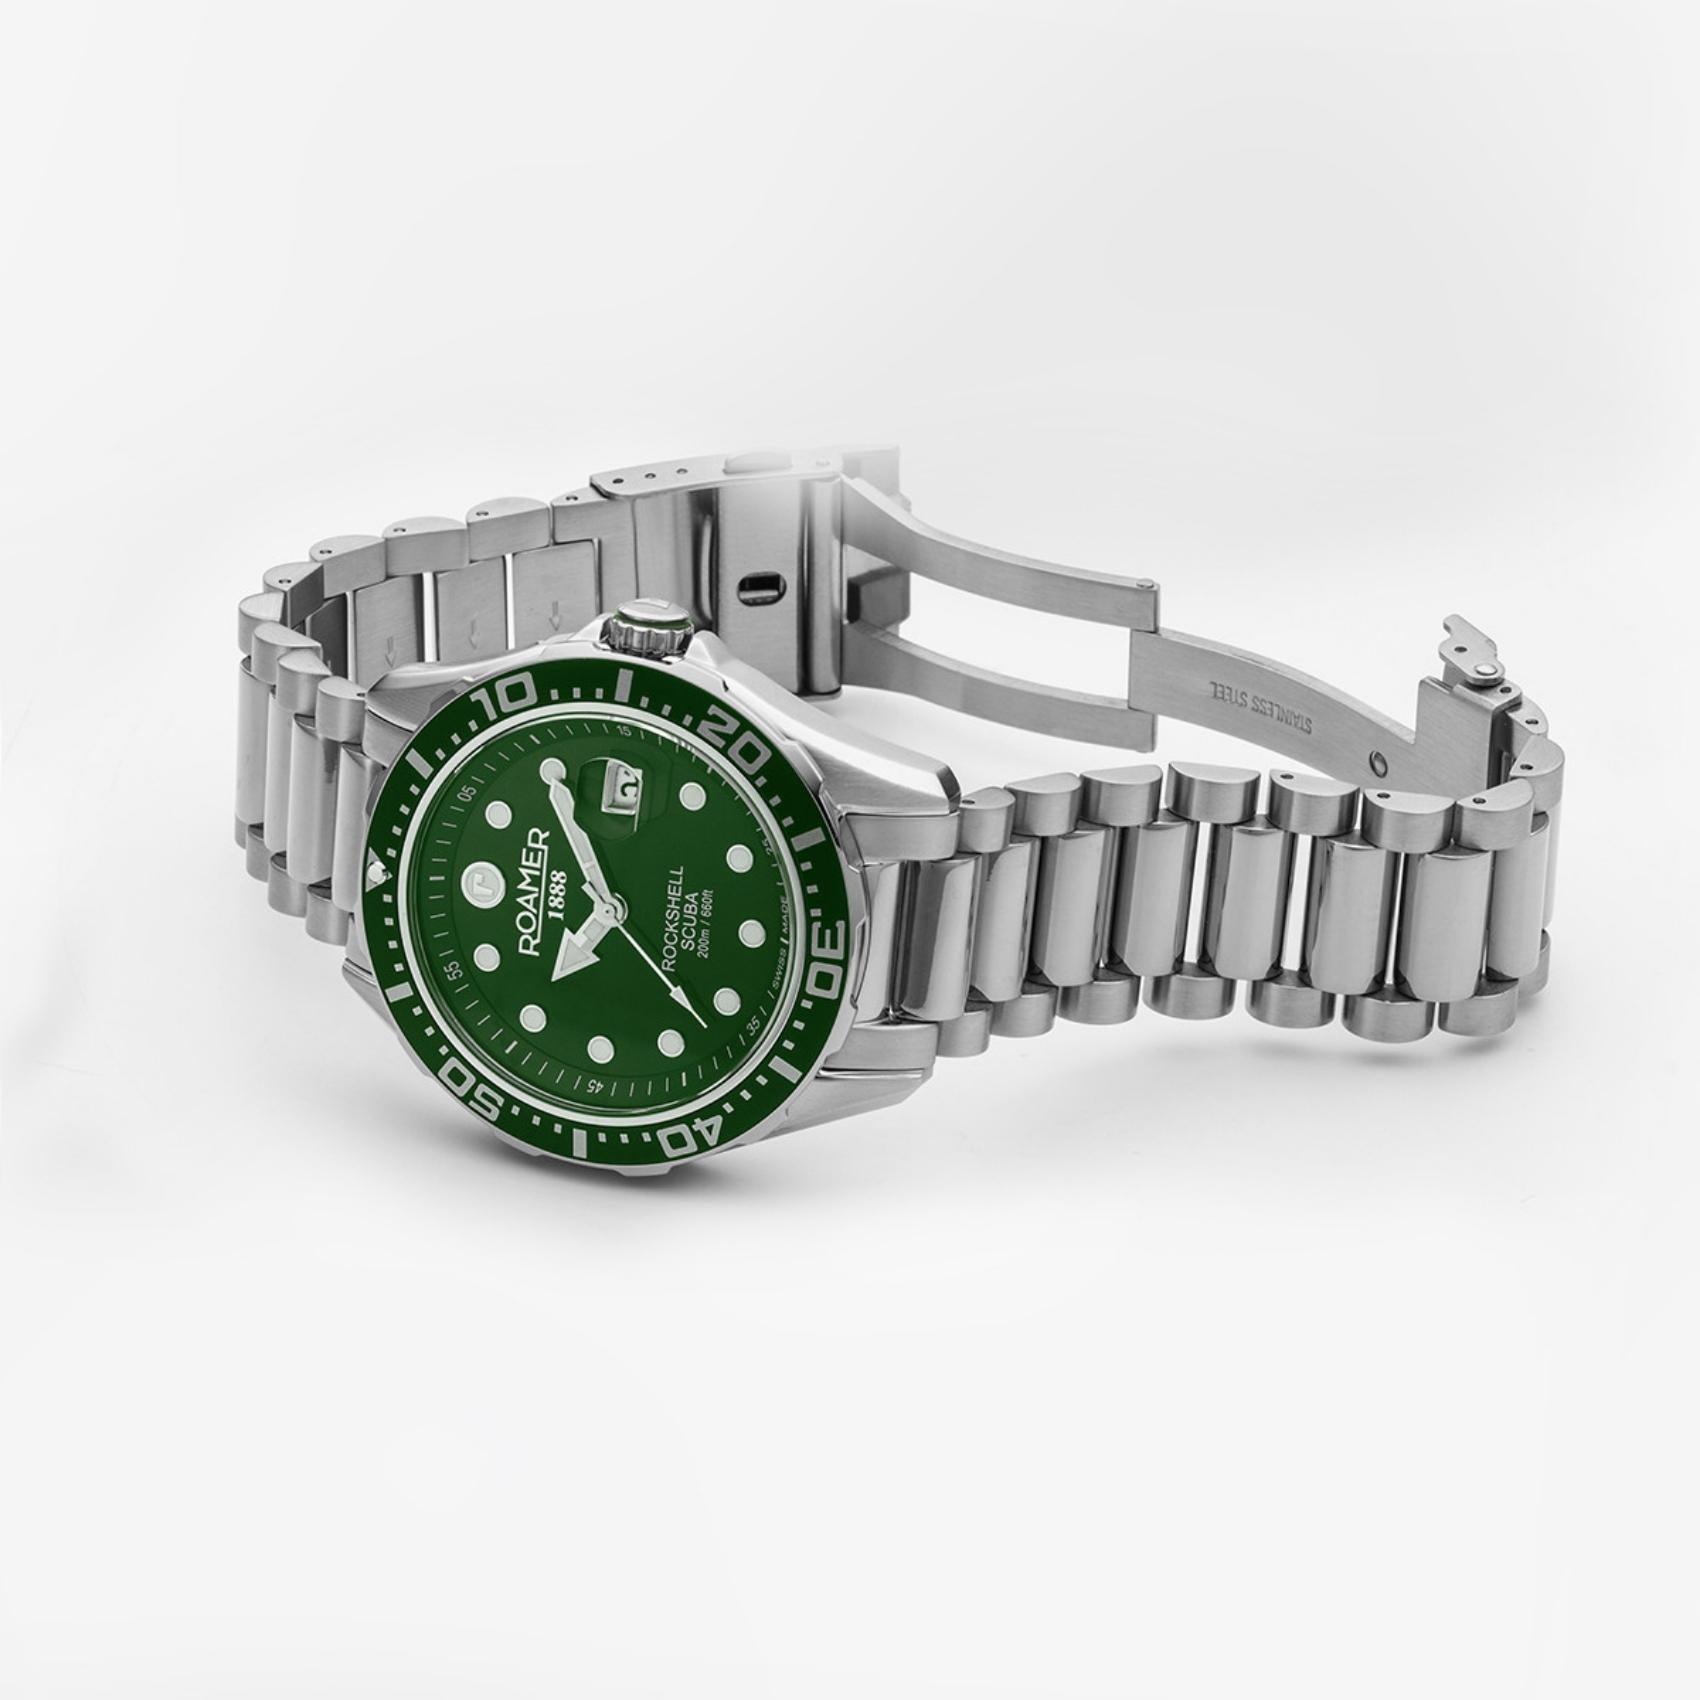 Καταδυτικό ρολόι Roamer Rockshell Mark III Scuba 220858-41-75-50 με ασημί ατσάλινο μπρασελέ πράσινο καντράν, τζαμάκι από ζαφείρι και στεφάνι διαμέτρου 44mm.